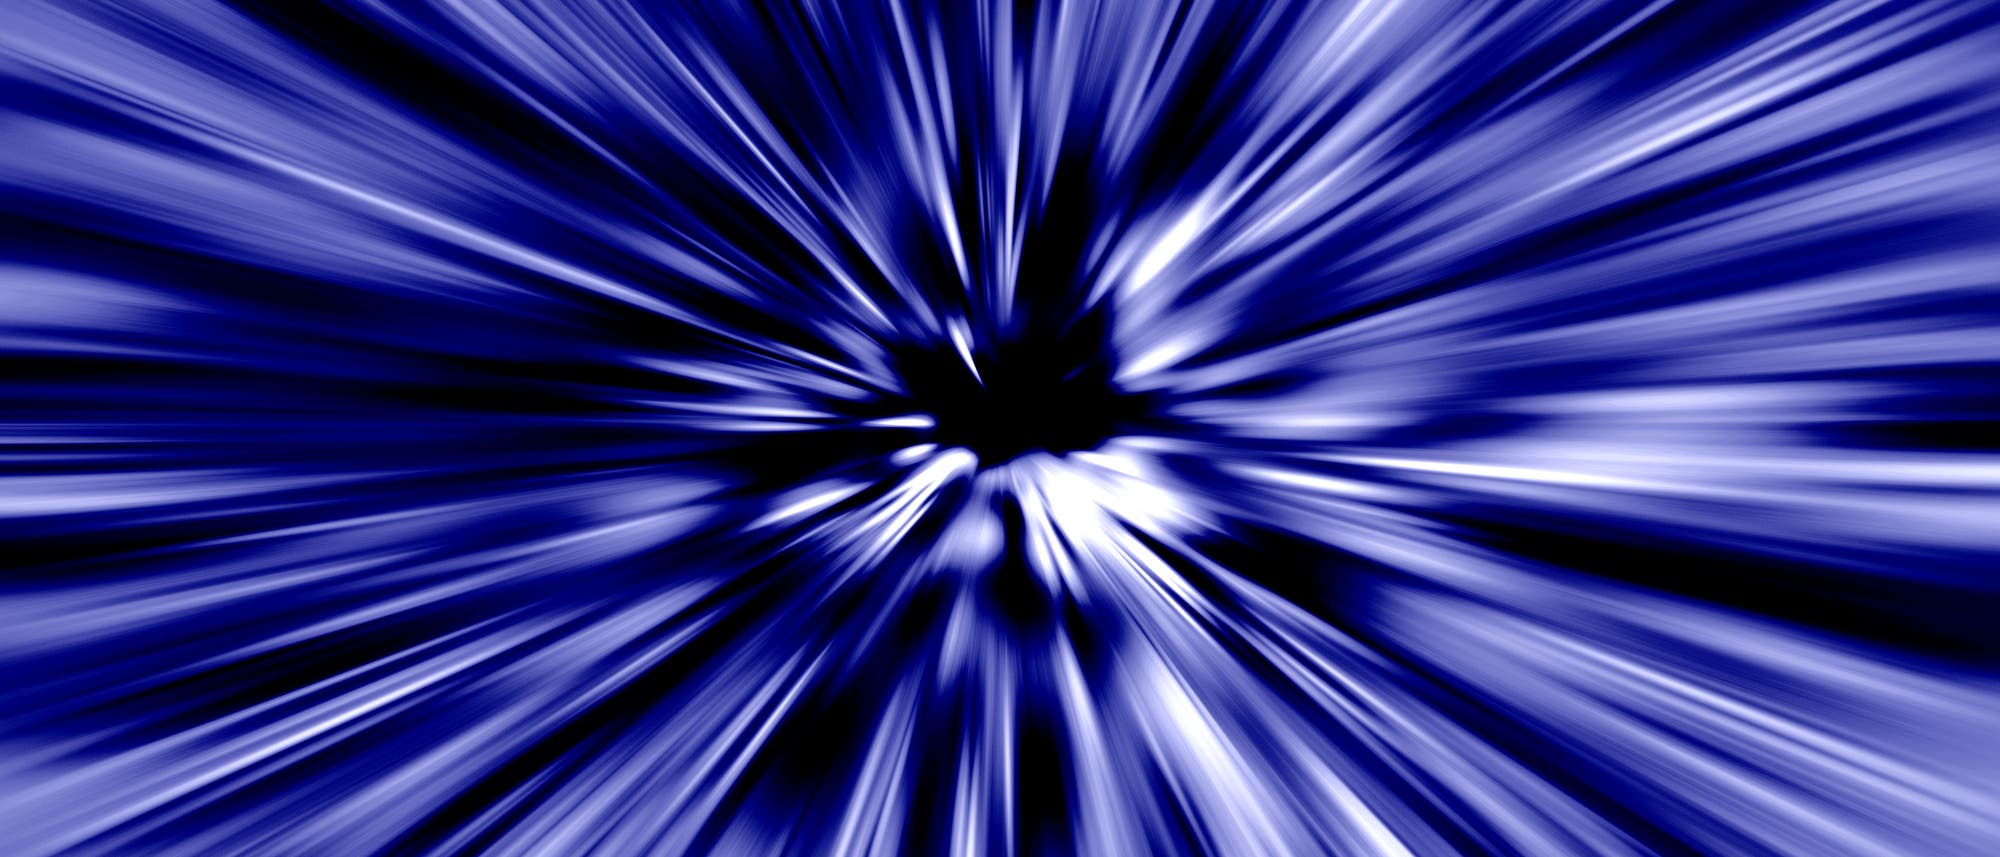 Aufs Bildzentrum zulaufende blaue und weiße Formen, die einen Eindruck von Geschwindigkeit vermitteln.